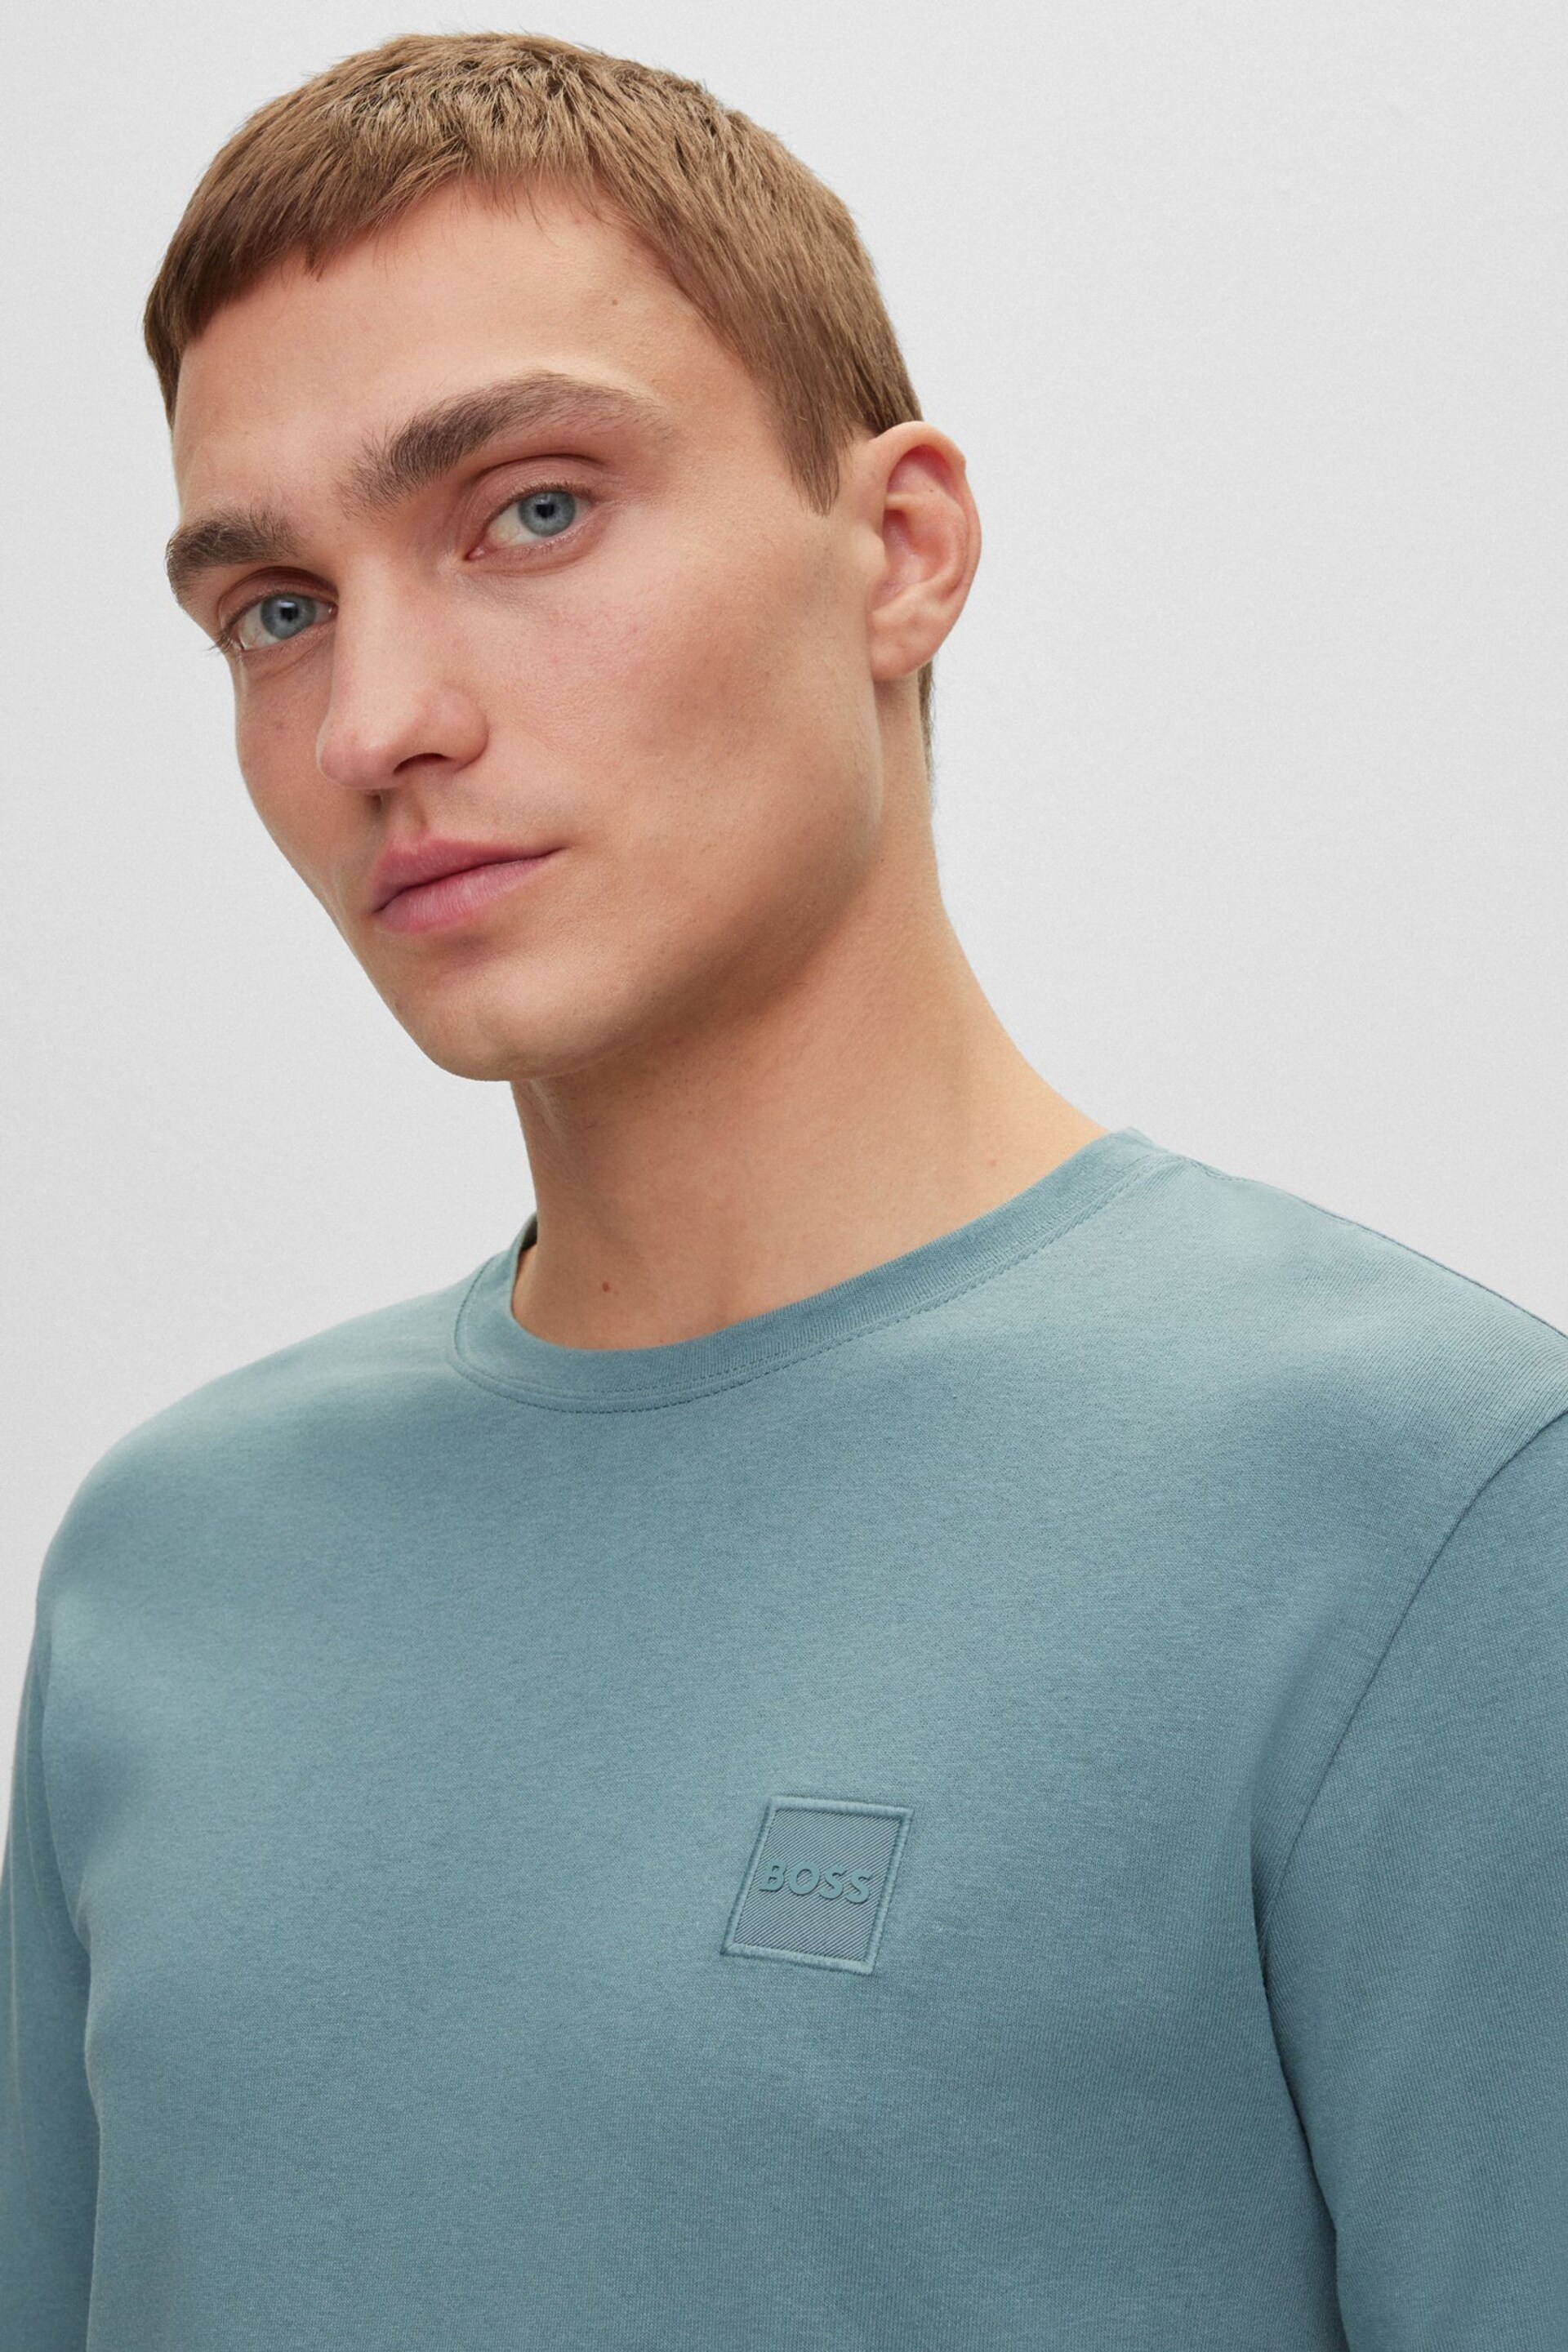 BOSS Green Tacks Long Sleeve T-Shirt - Image 4 of 5